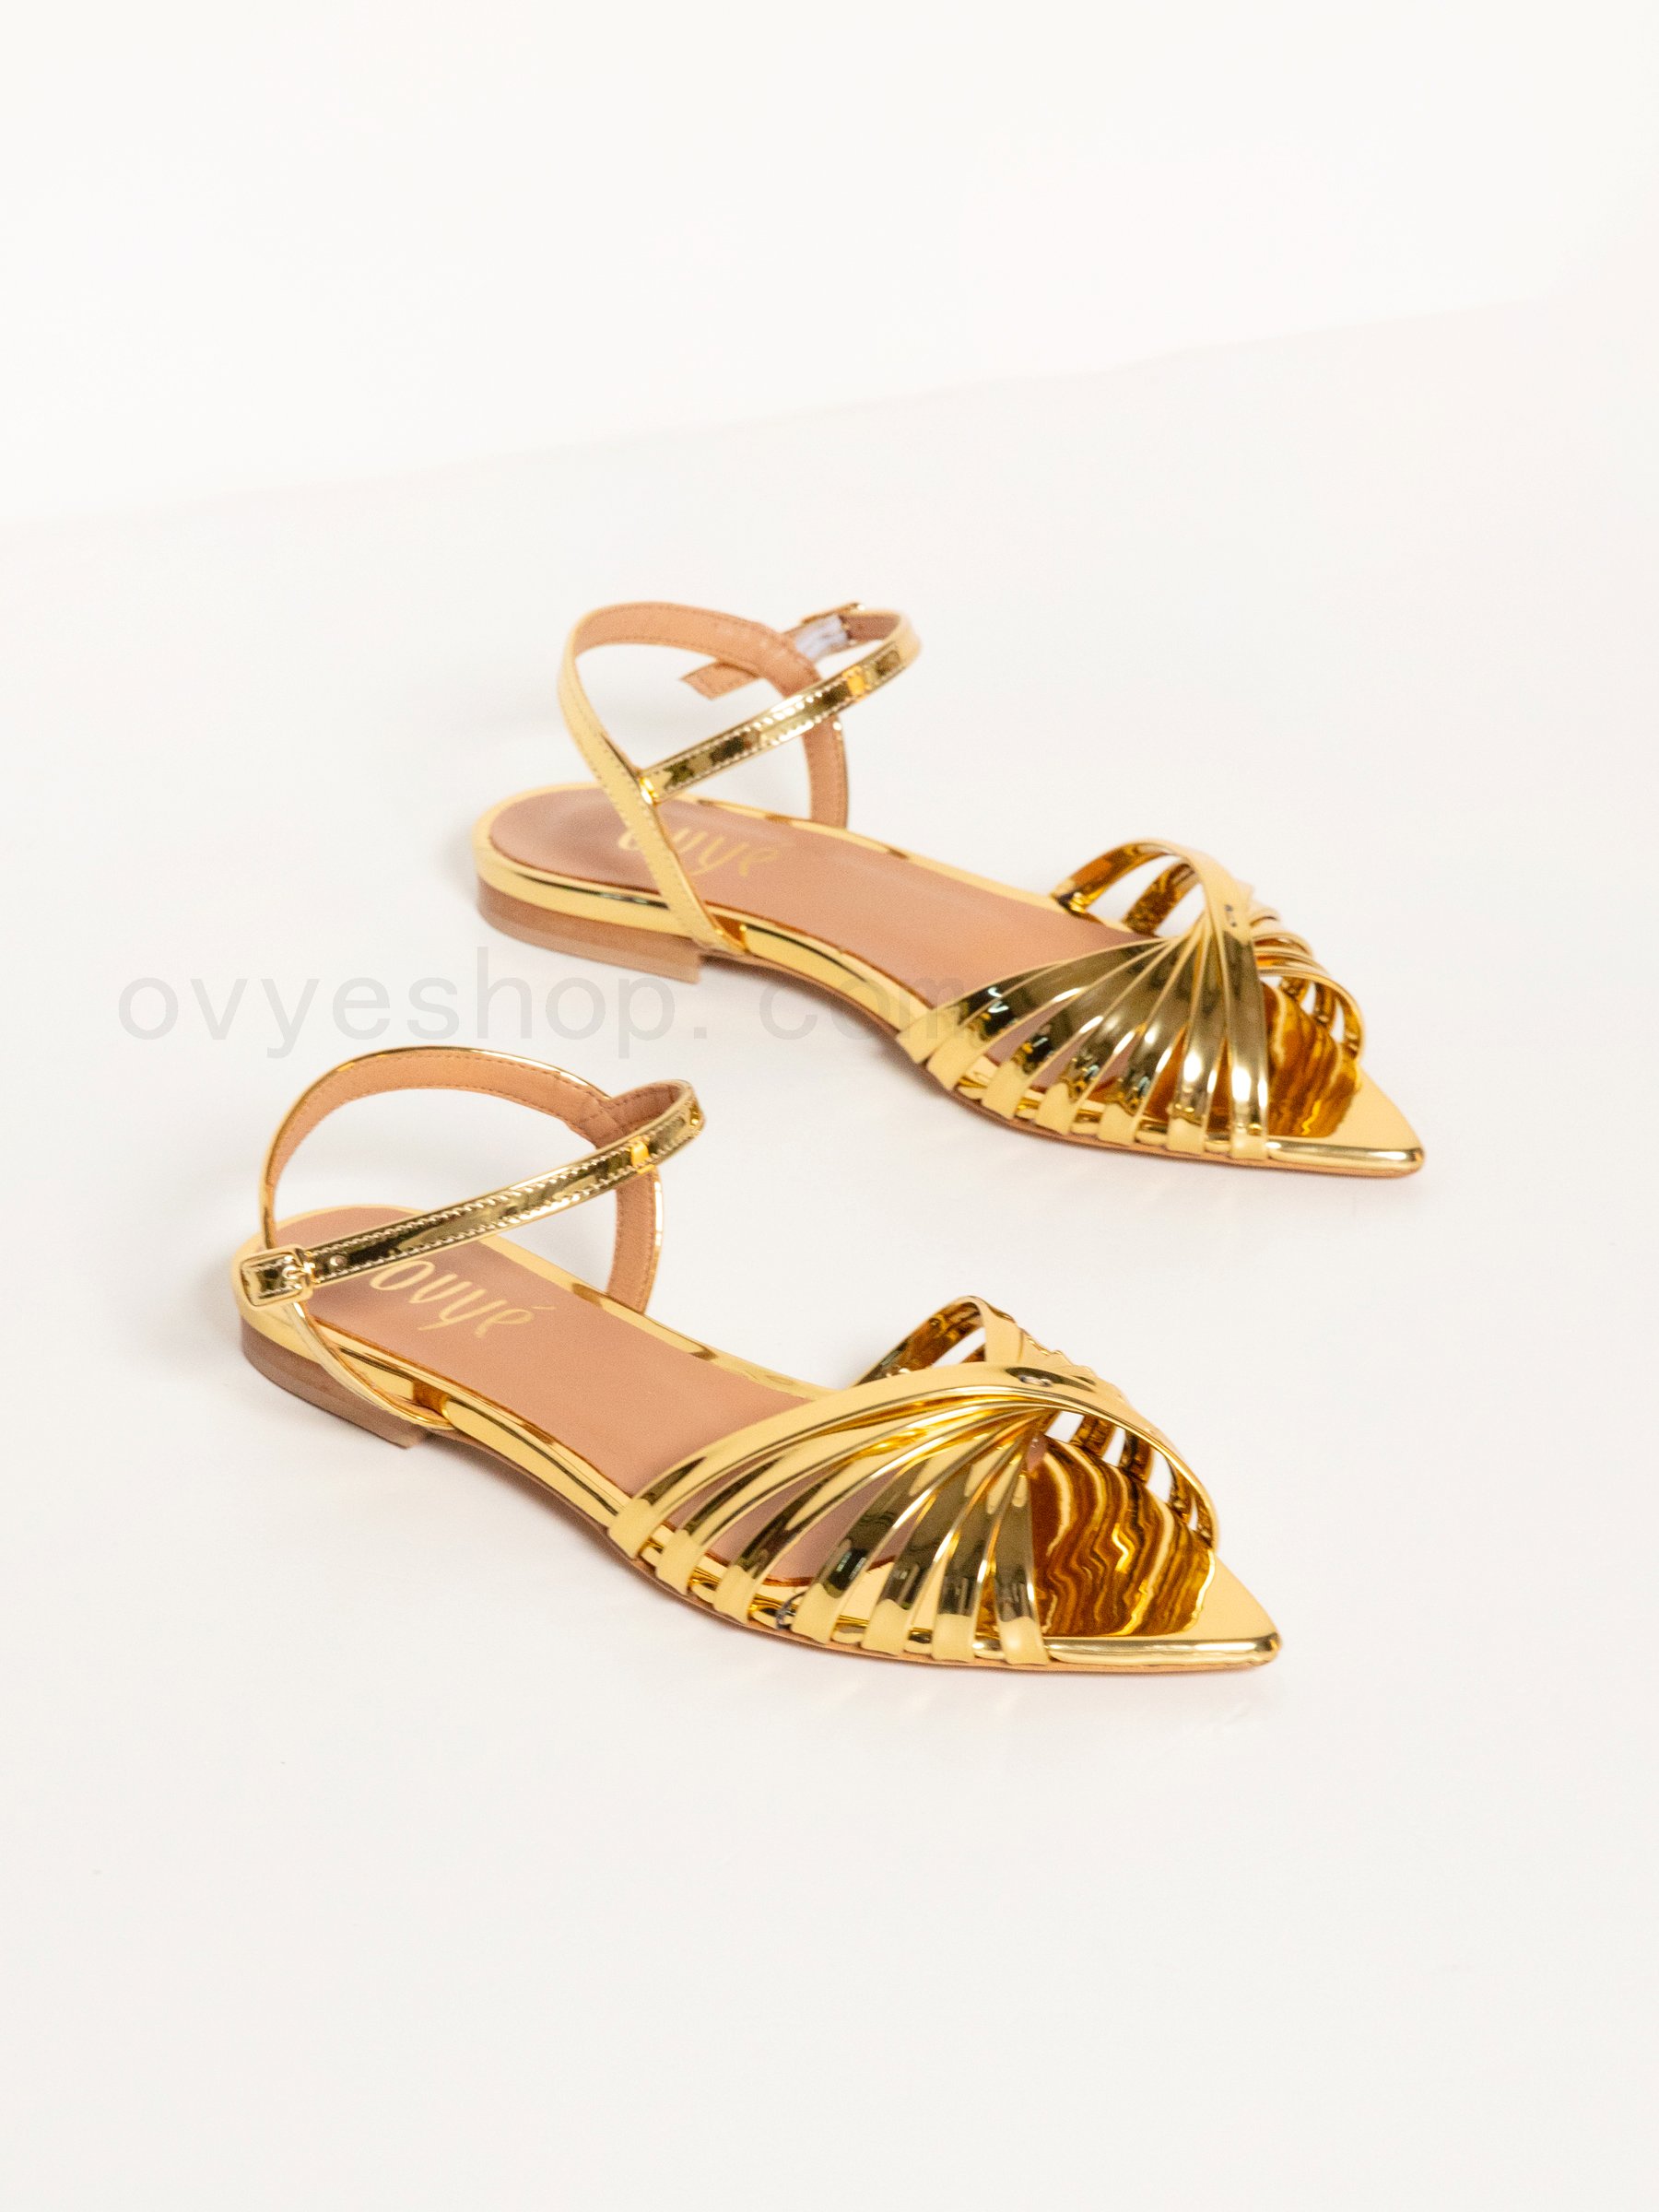 (image for) Acquista Mirror Sandal Gold Color F0817885-0588 85% Codice Sconto